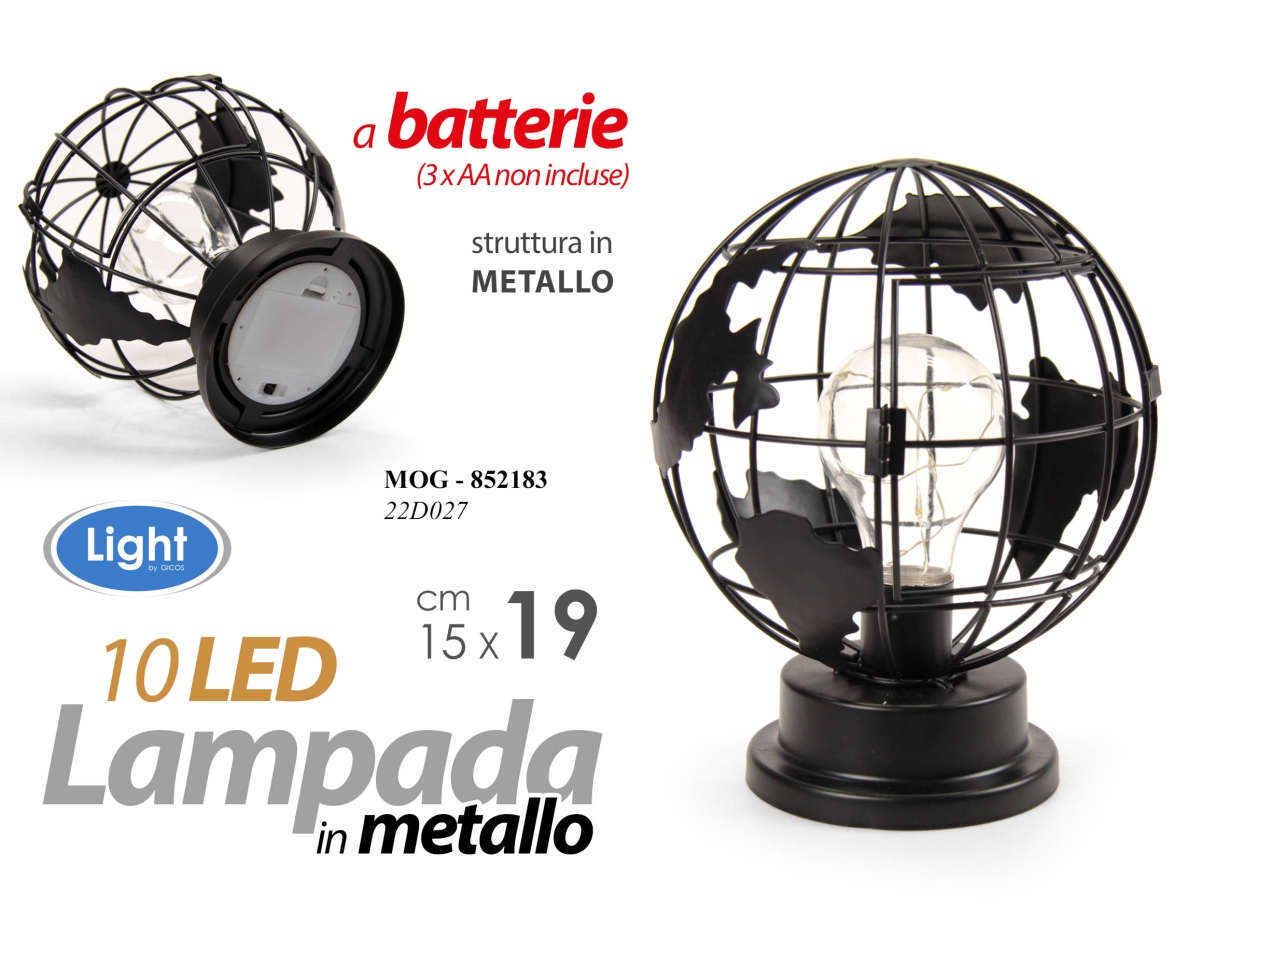 Lampada in metallo nera a forma di mappamondo con 10 led misura 15x15x19cm  - funzionamento a batterie (3x aa non incluse)